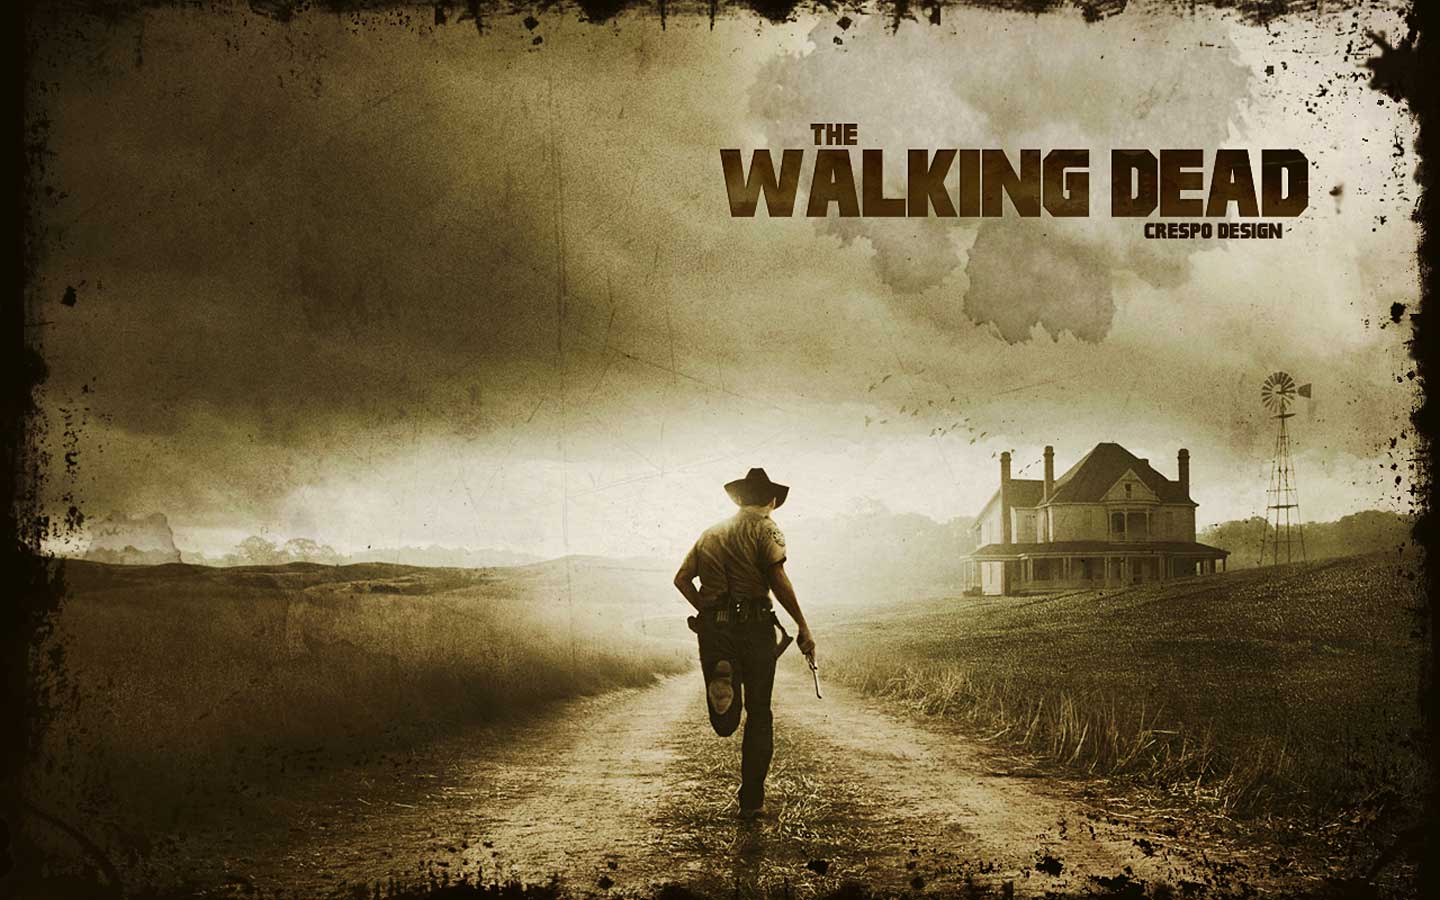 Walking Dead Image Wallpaper